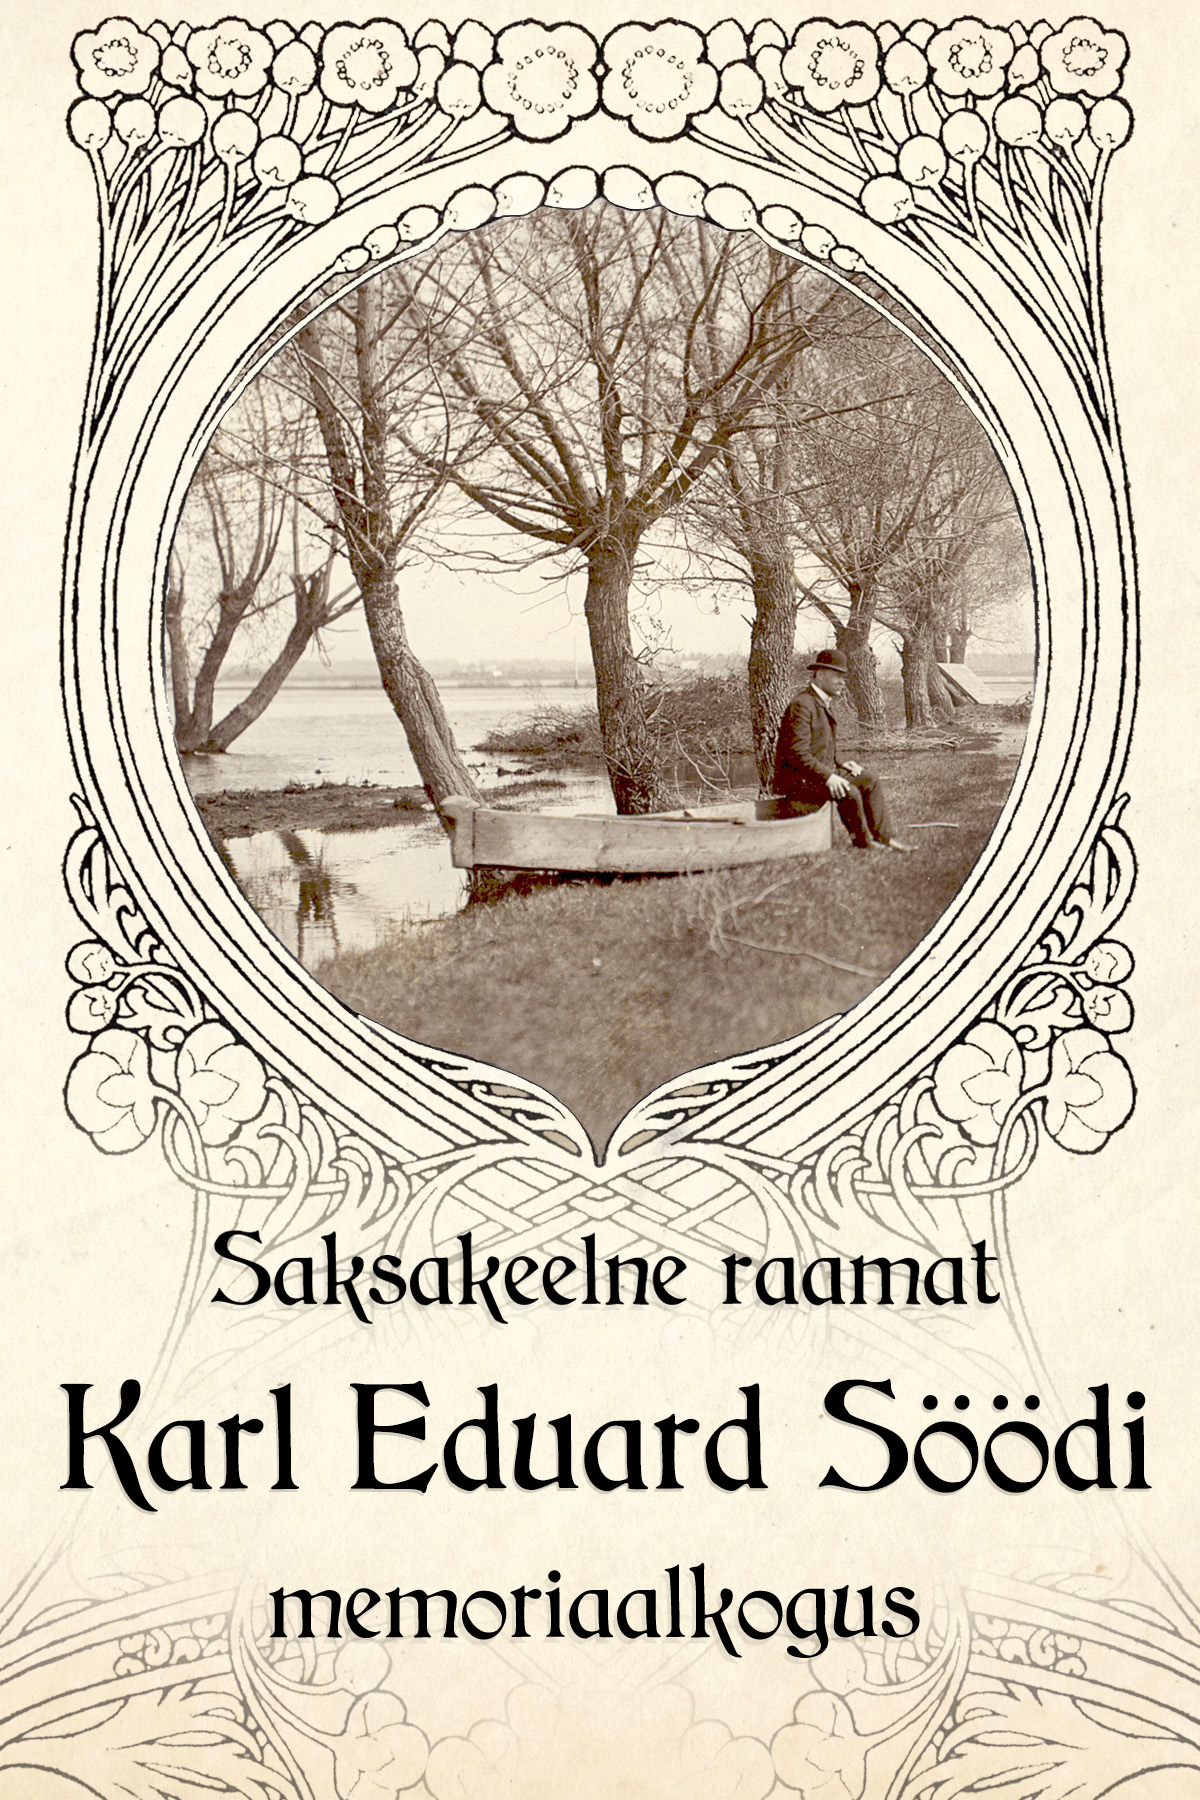 Saksakeelne raamat Karl eduard Söödi memoriaalkogus